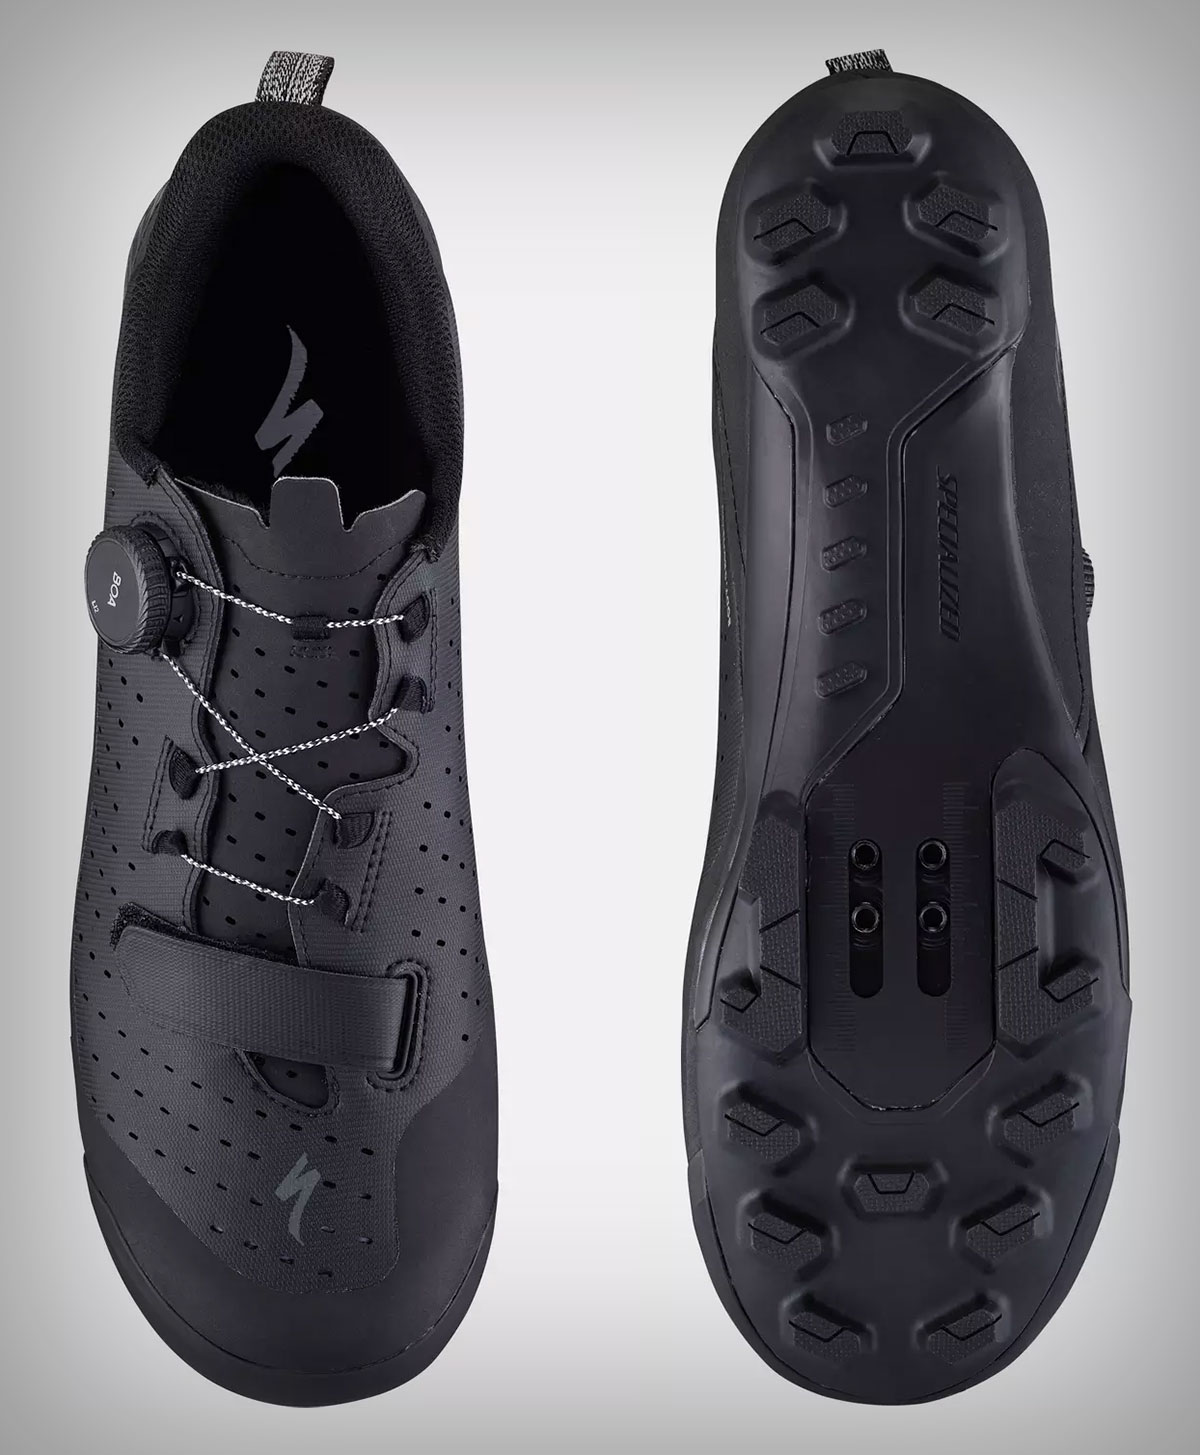 Specialized presenta las MTB Recon, tres modelos de zapatillas con tecnología S-Works a precio más accesible